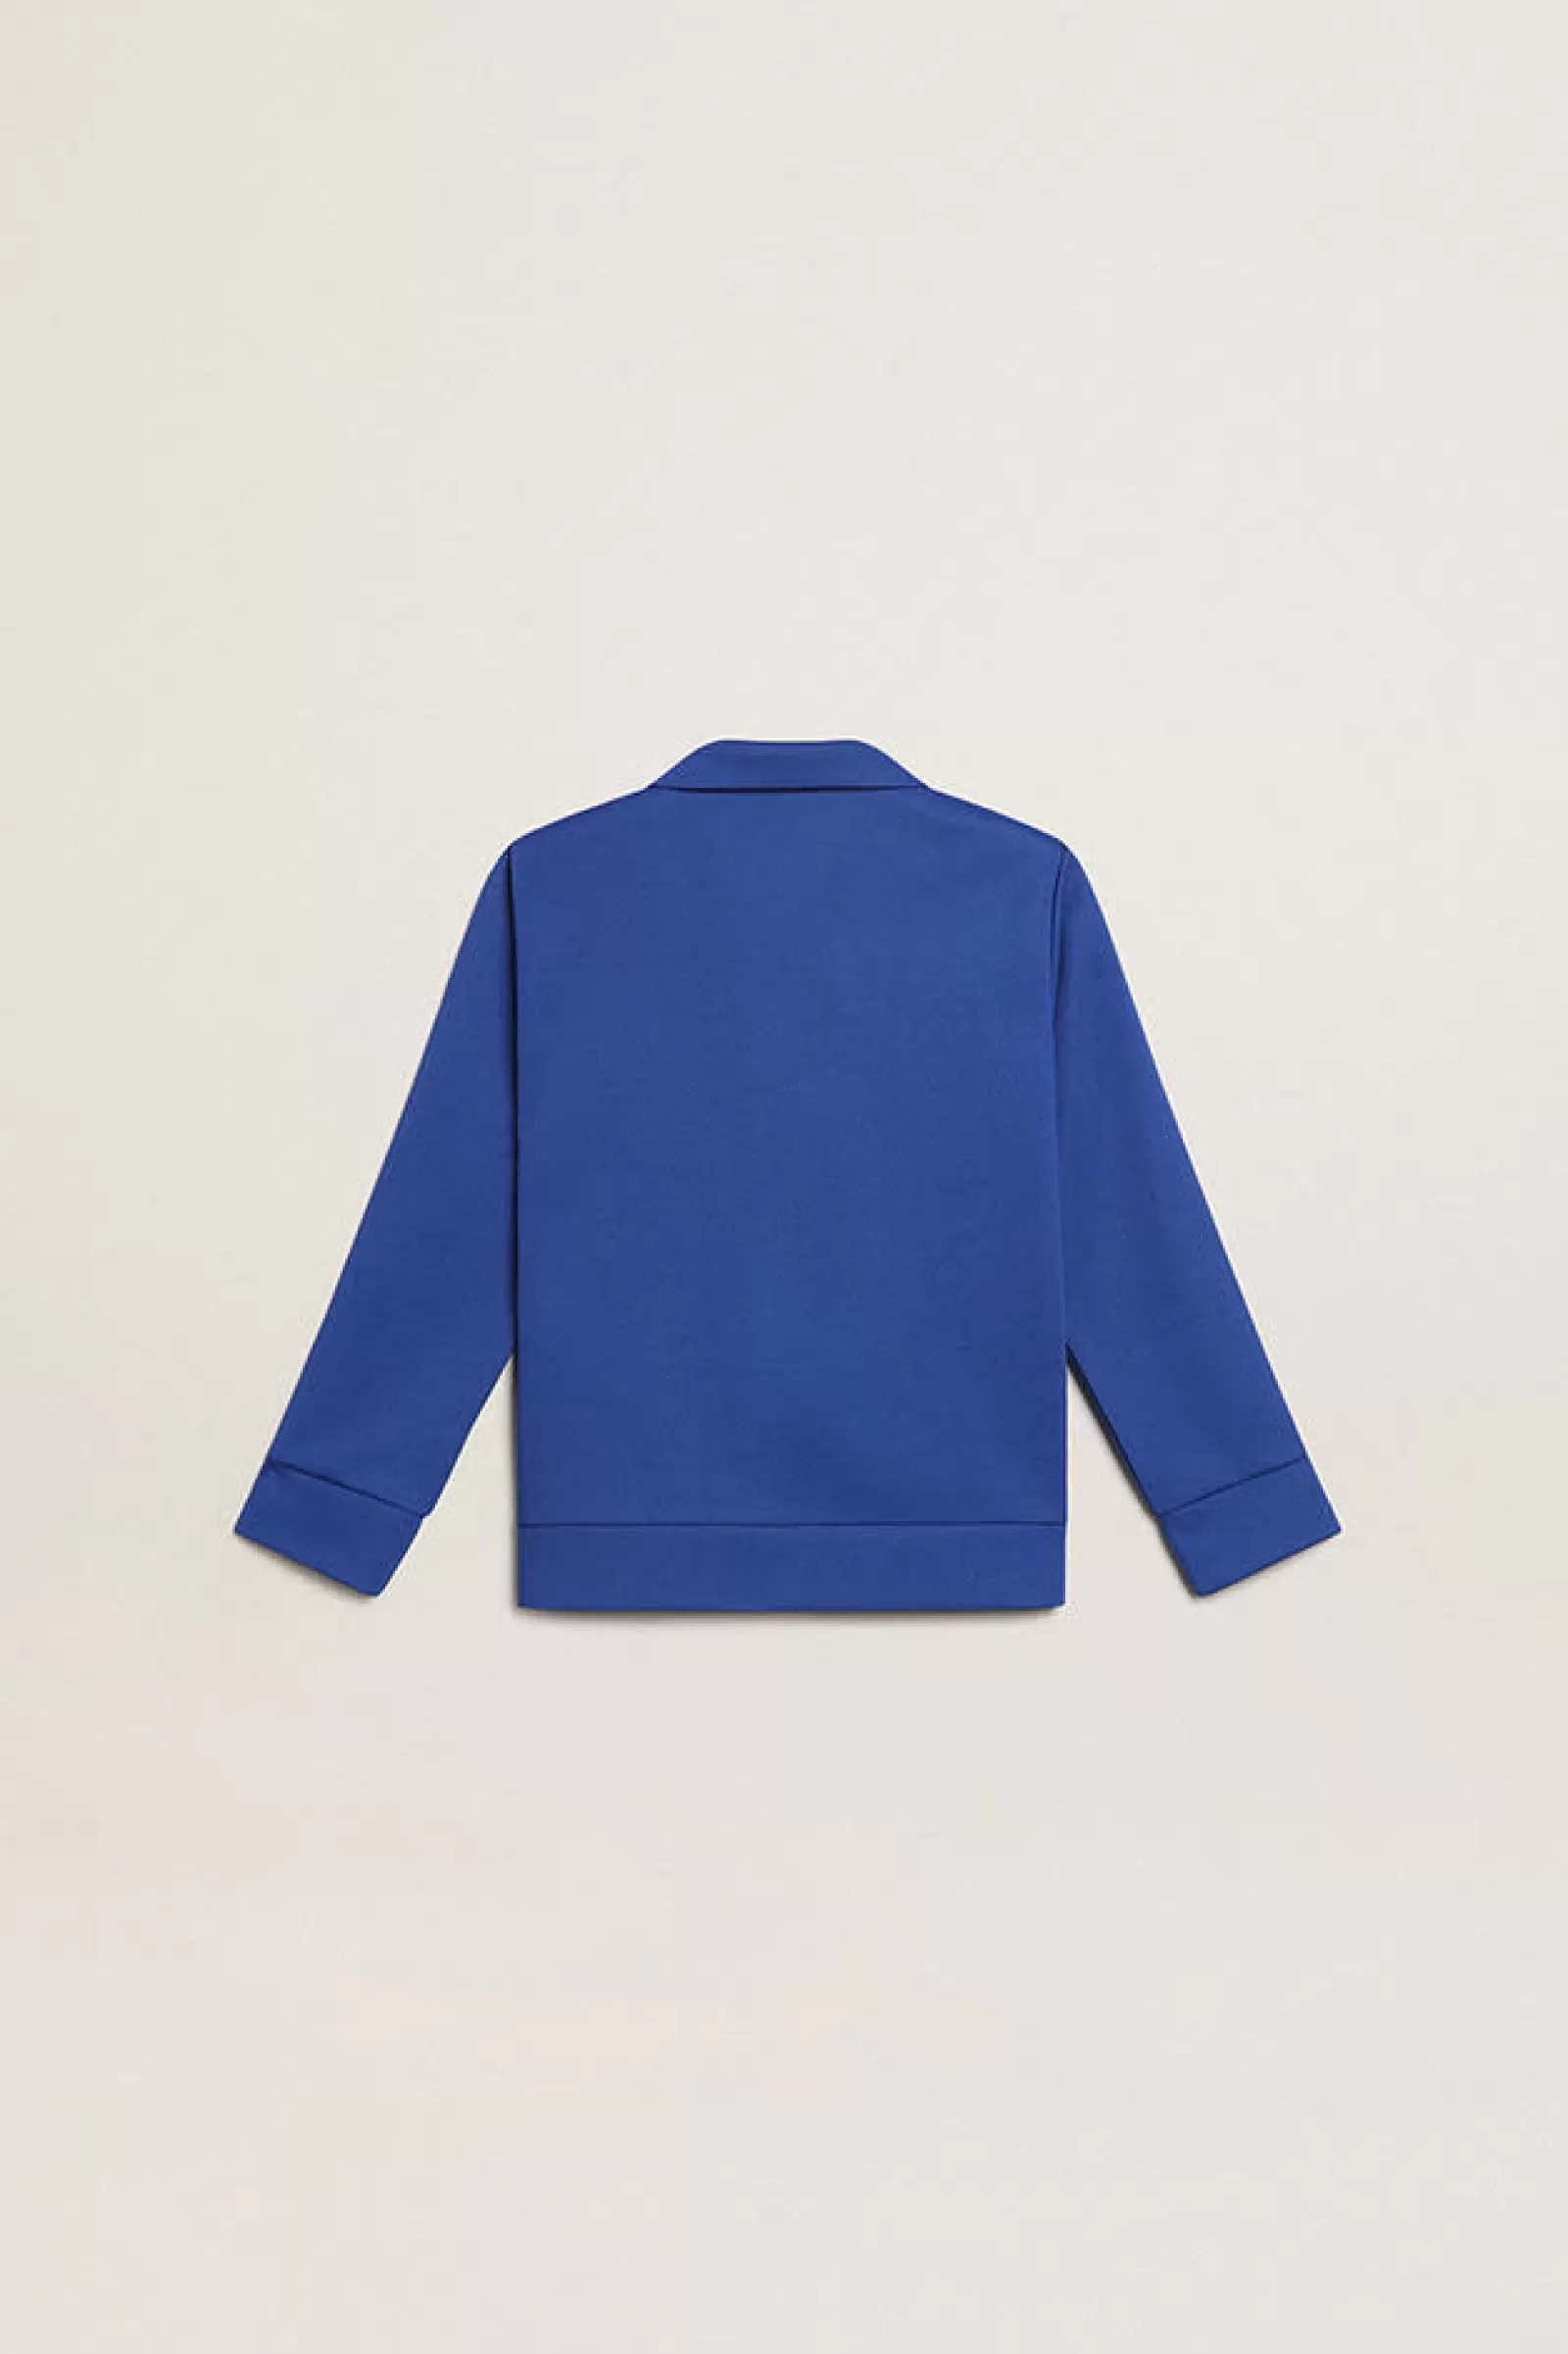 Sweat-shirt bleuet avec fermeture à glissière, bande blanche et étoiles bleuet | Golden Goose Sale